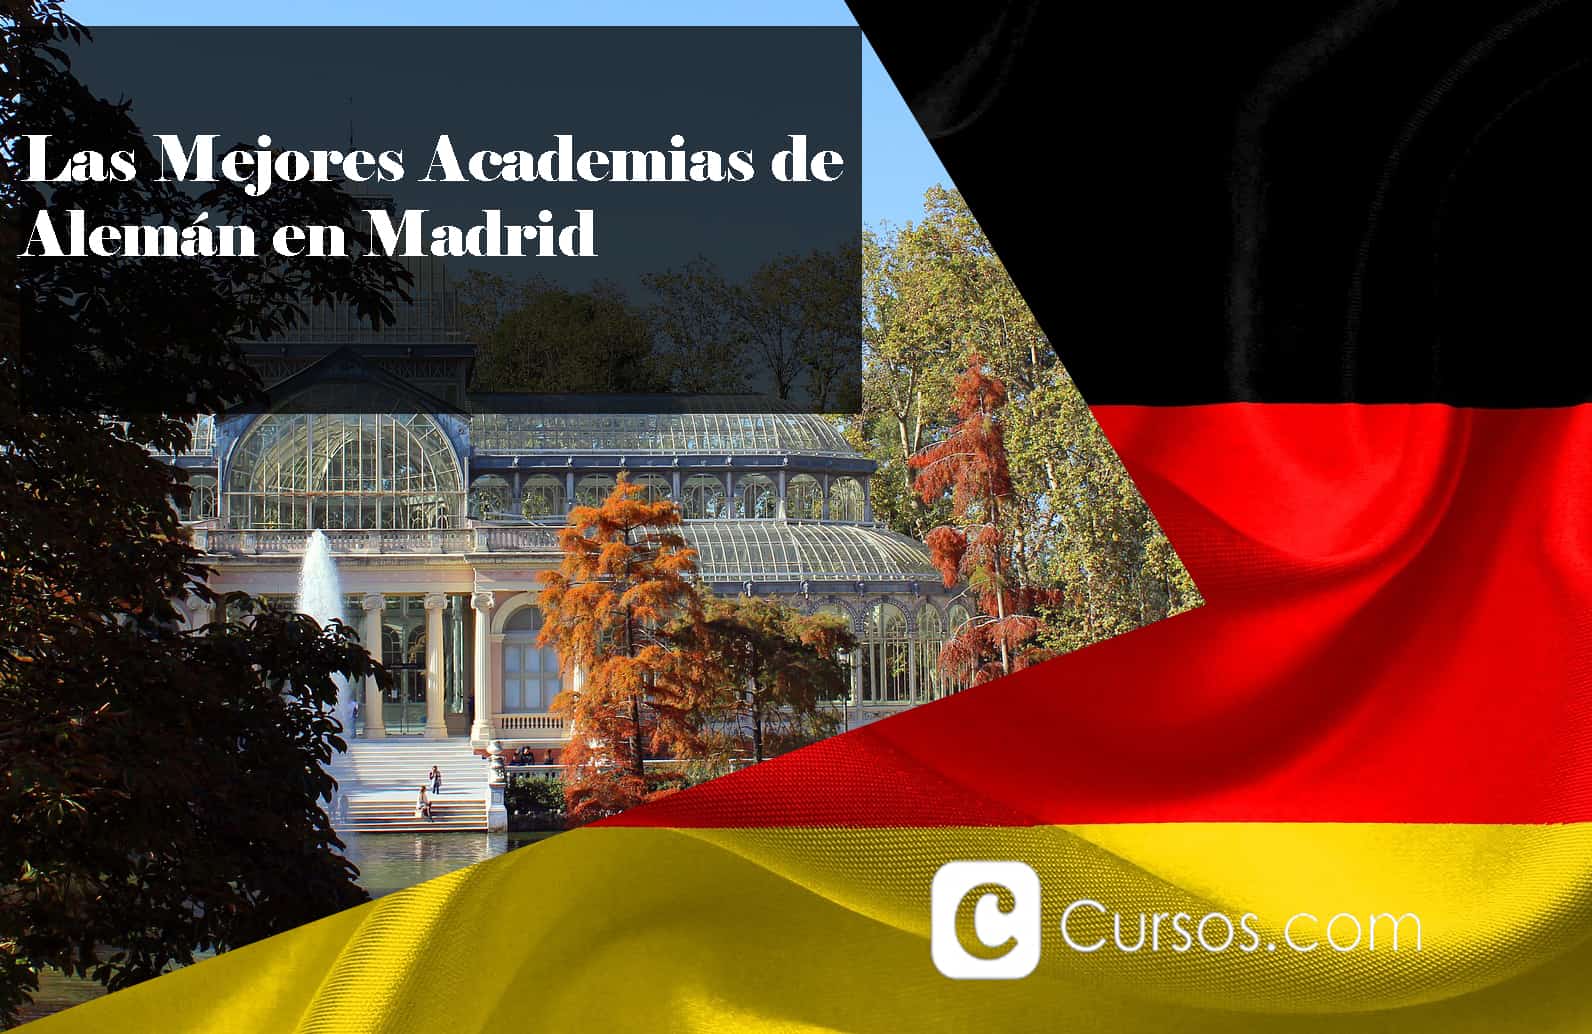 Las Mejores Academias de Alemán en Madrid